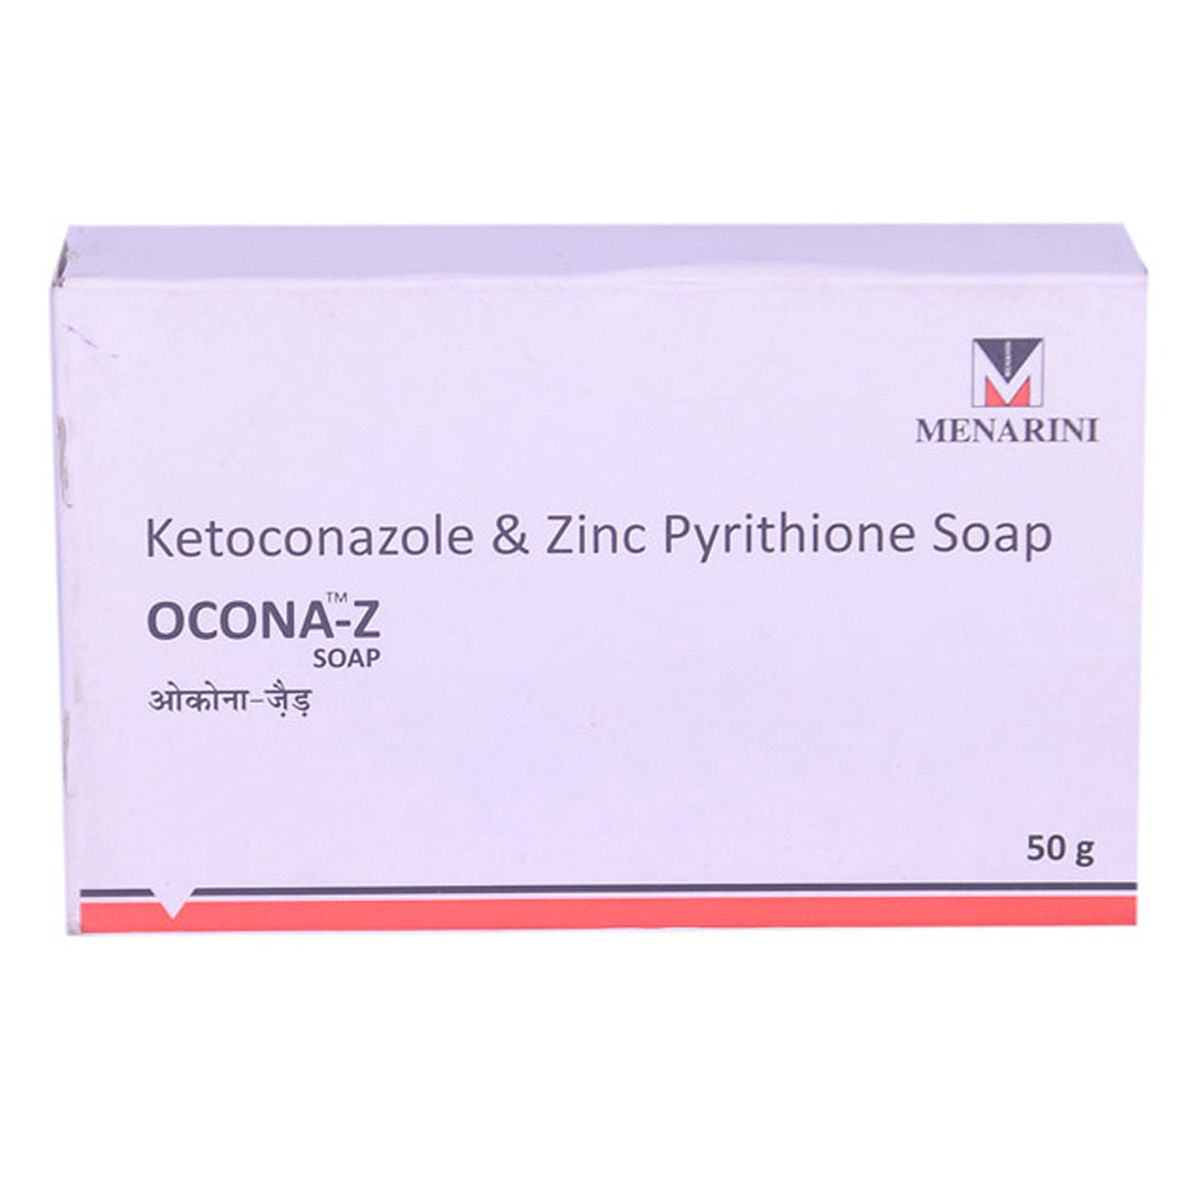 Buy Ocona Z Soap, 50 gm Online